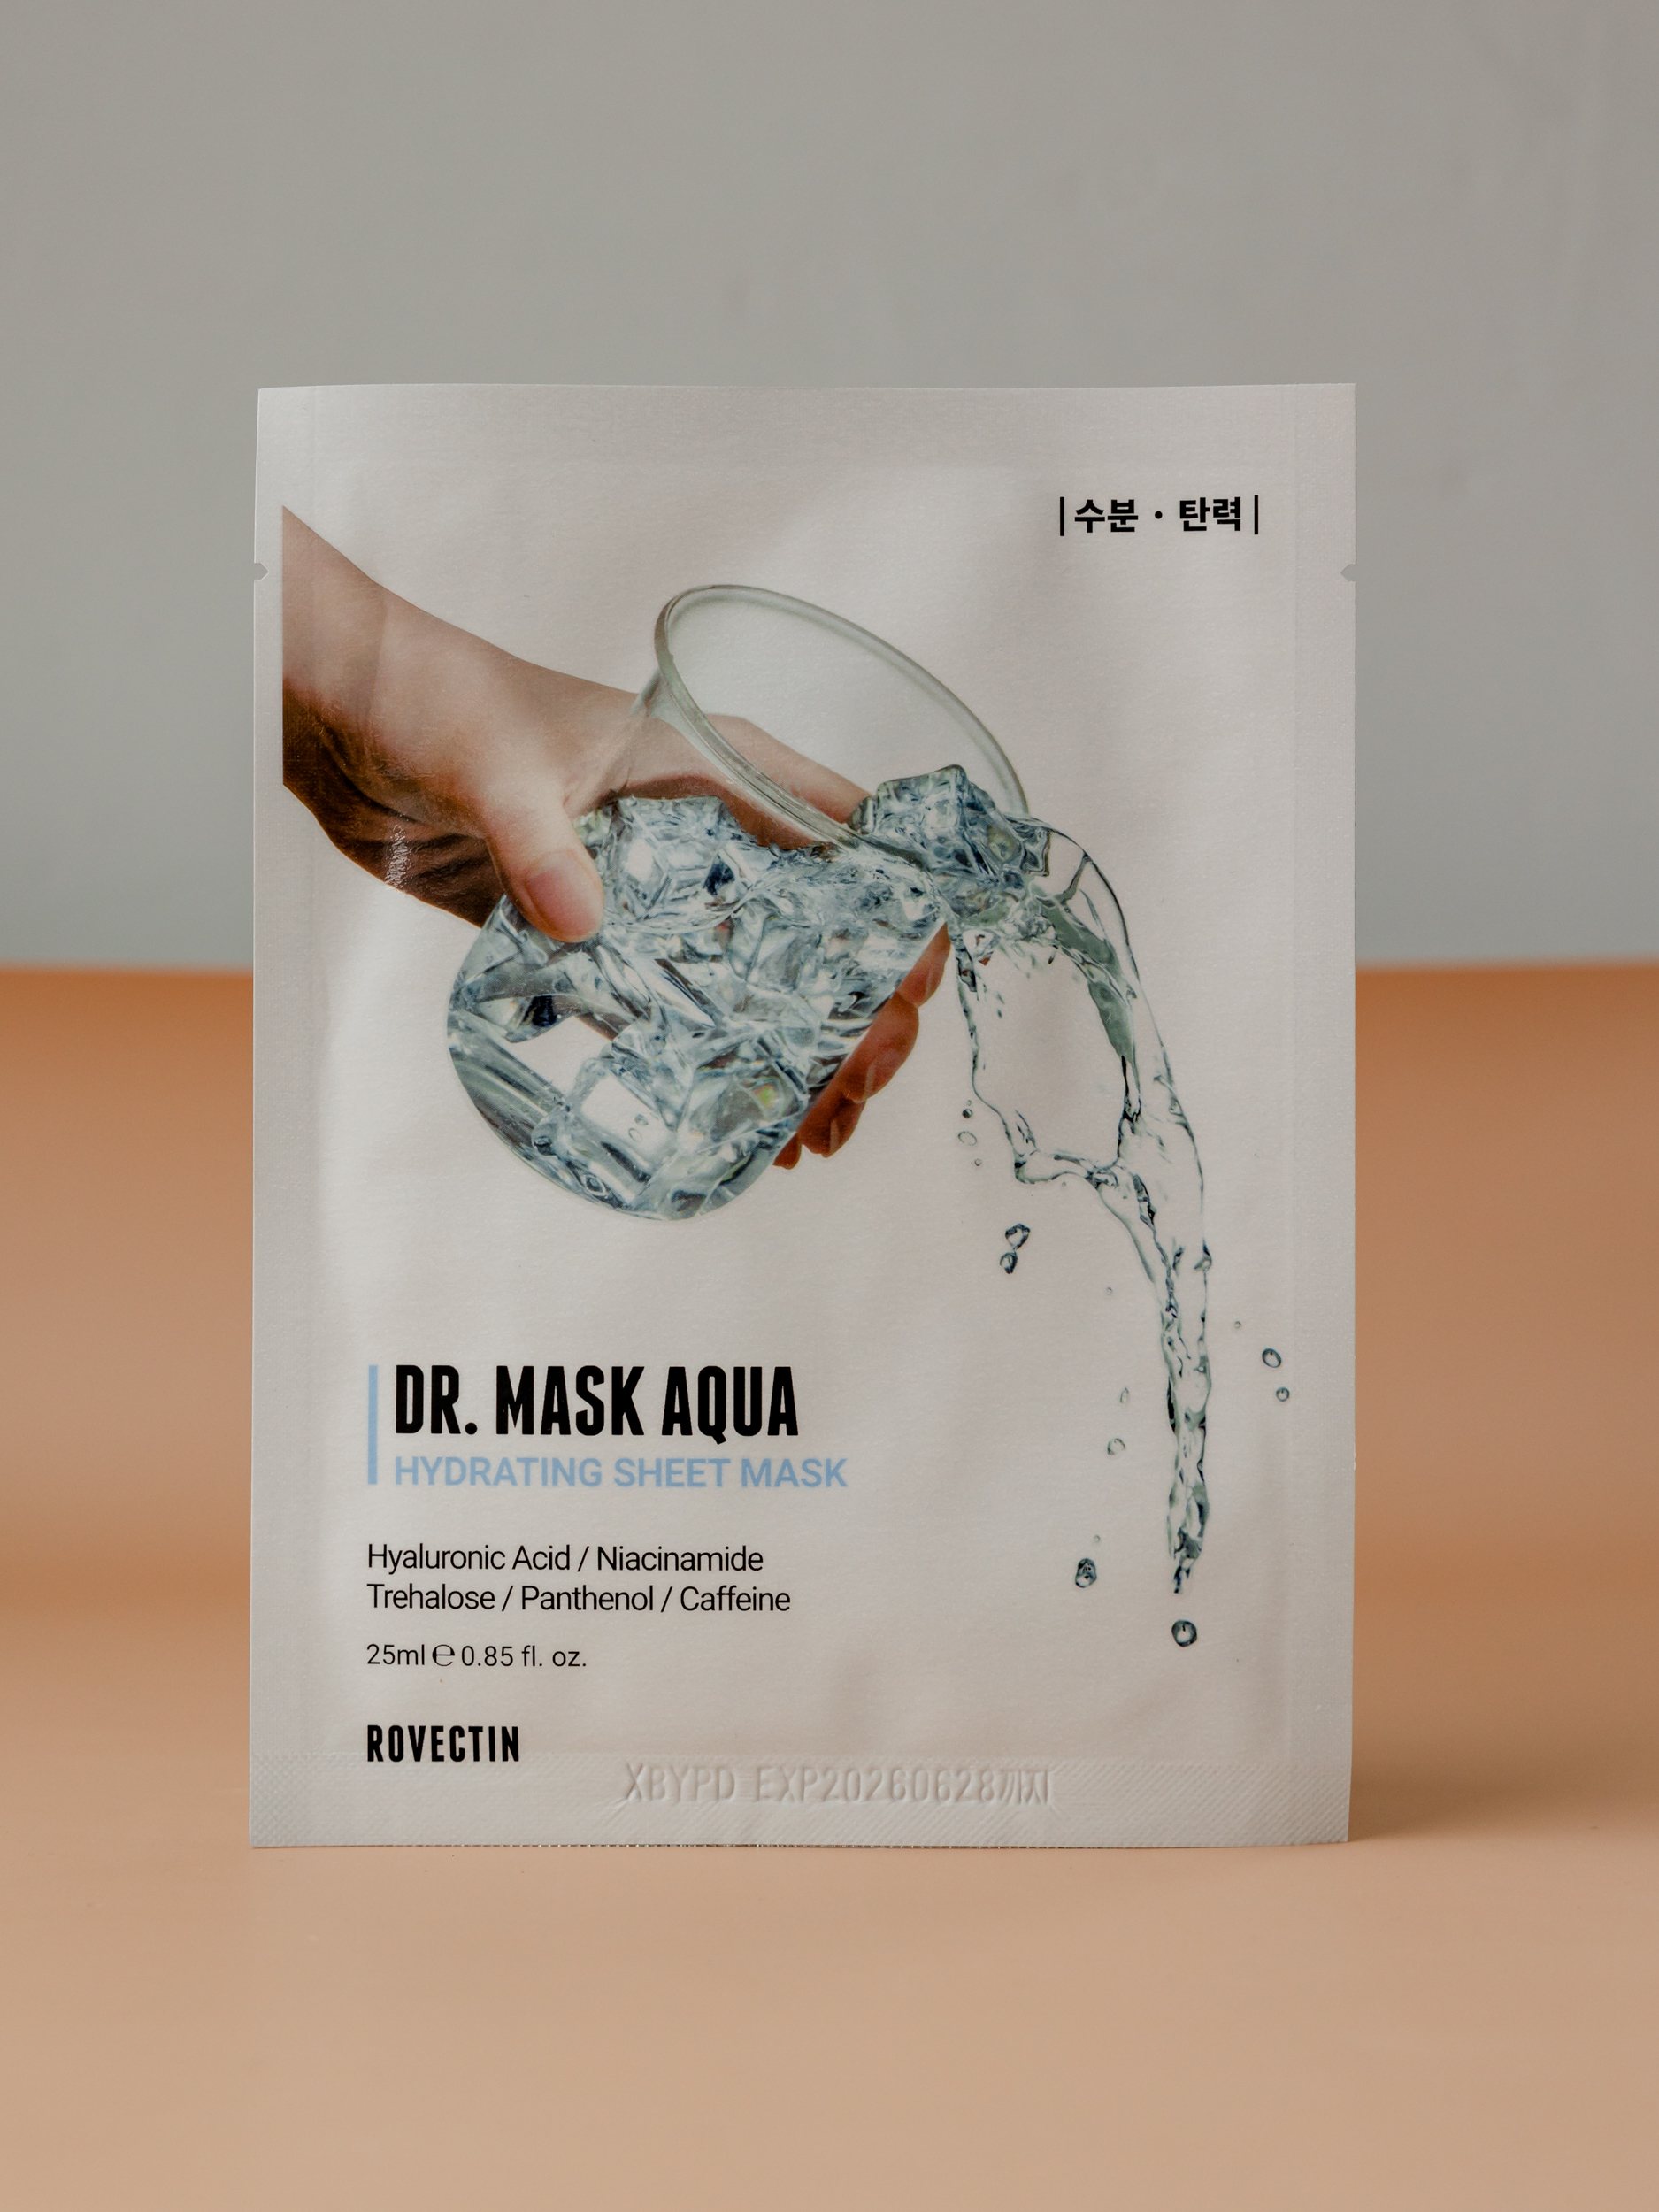 Глубокое 7-уровневое увлажнение вашей кожи в формате тканевой маски ROVECTIN Skin Essentials Dr. Mask Aqua Hydrating Sheet Mask 25ml